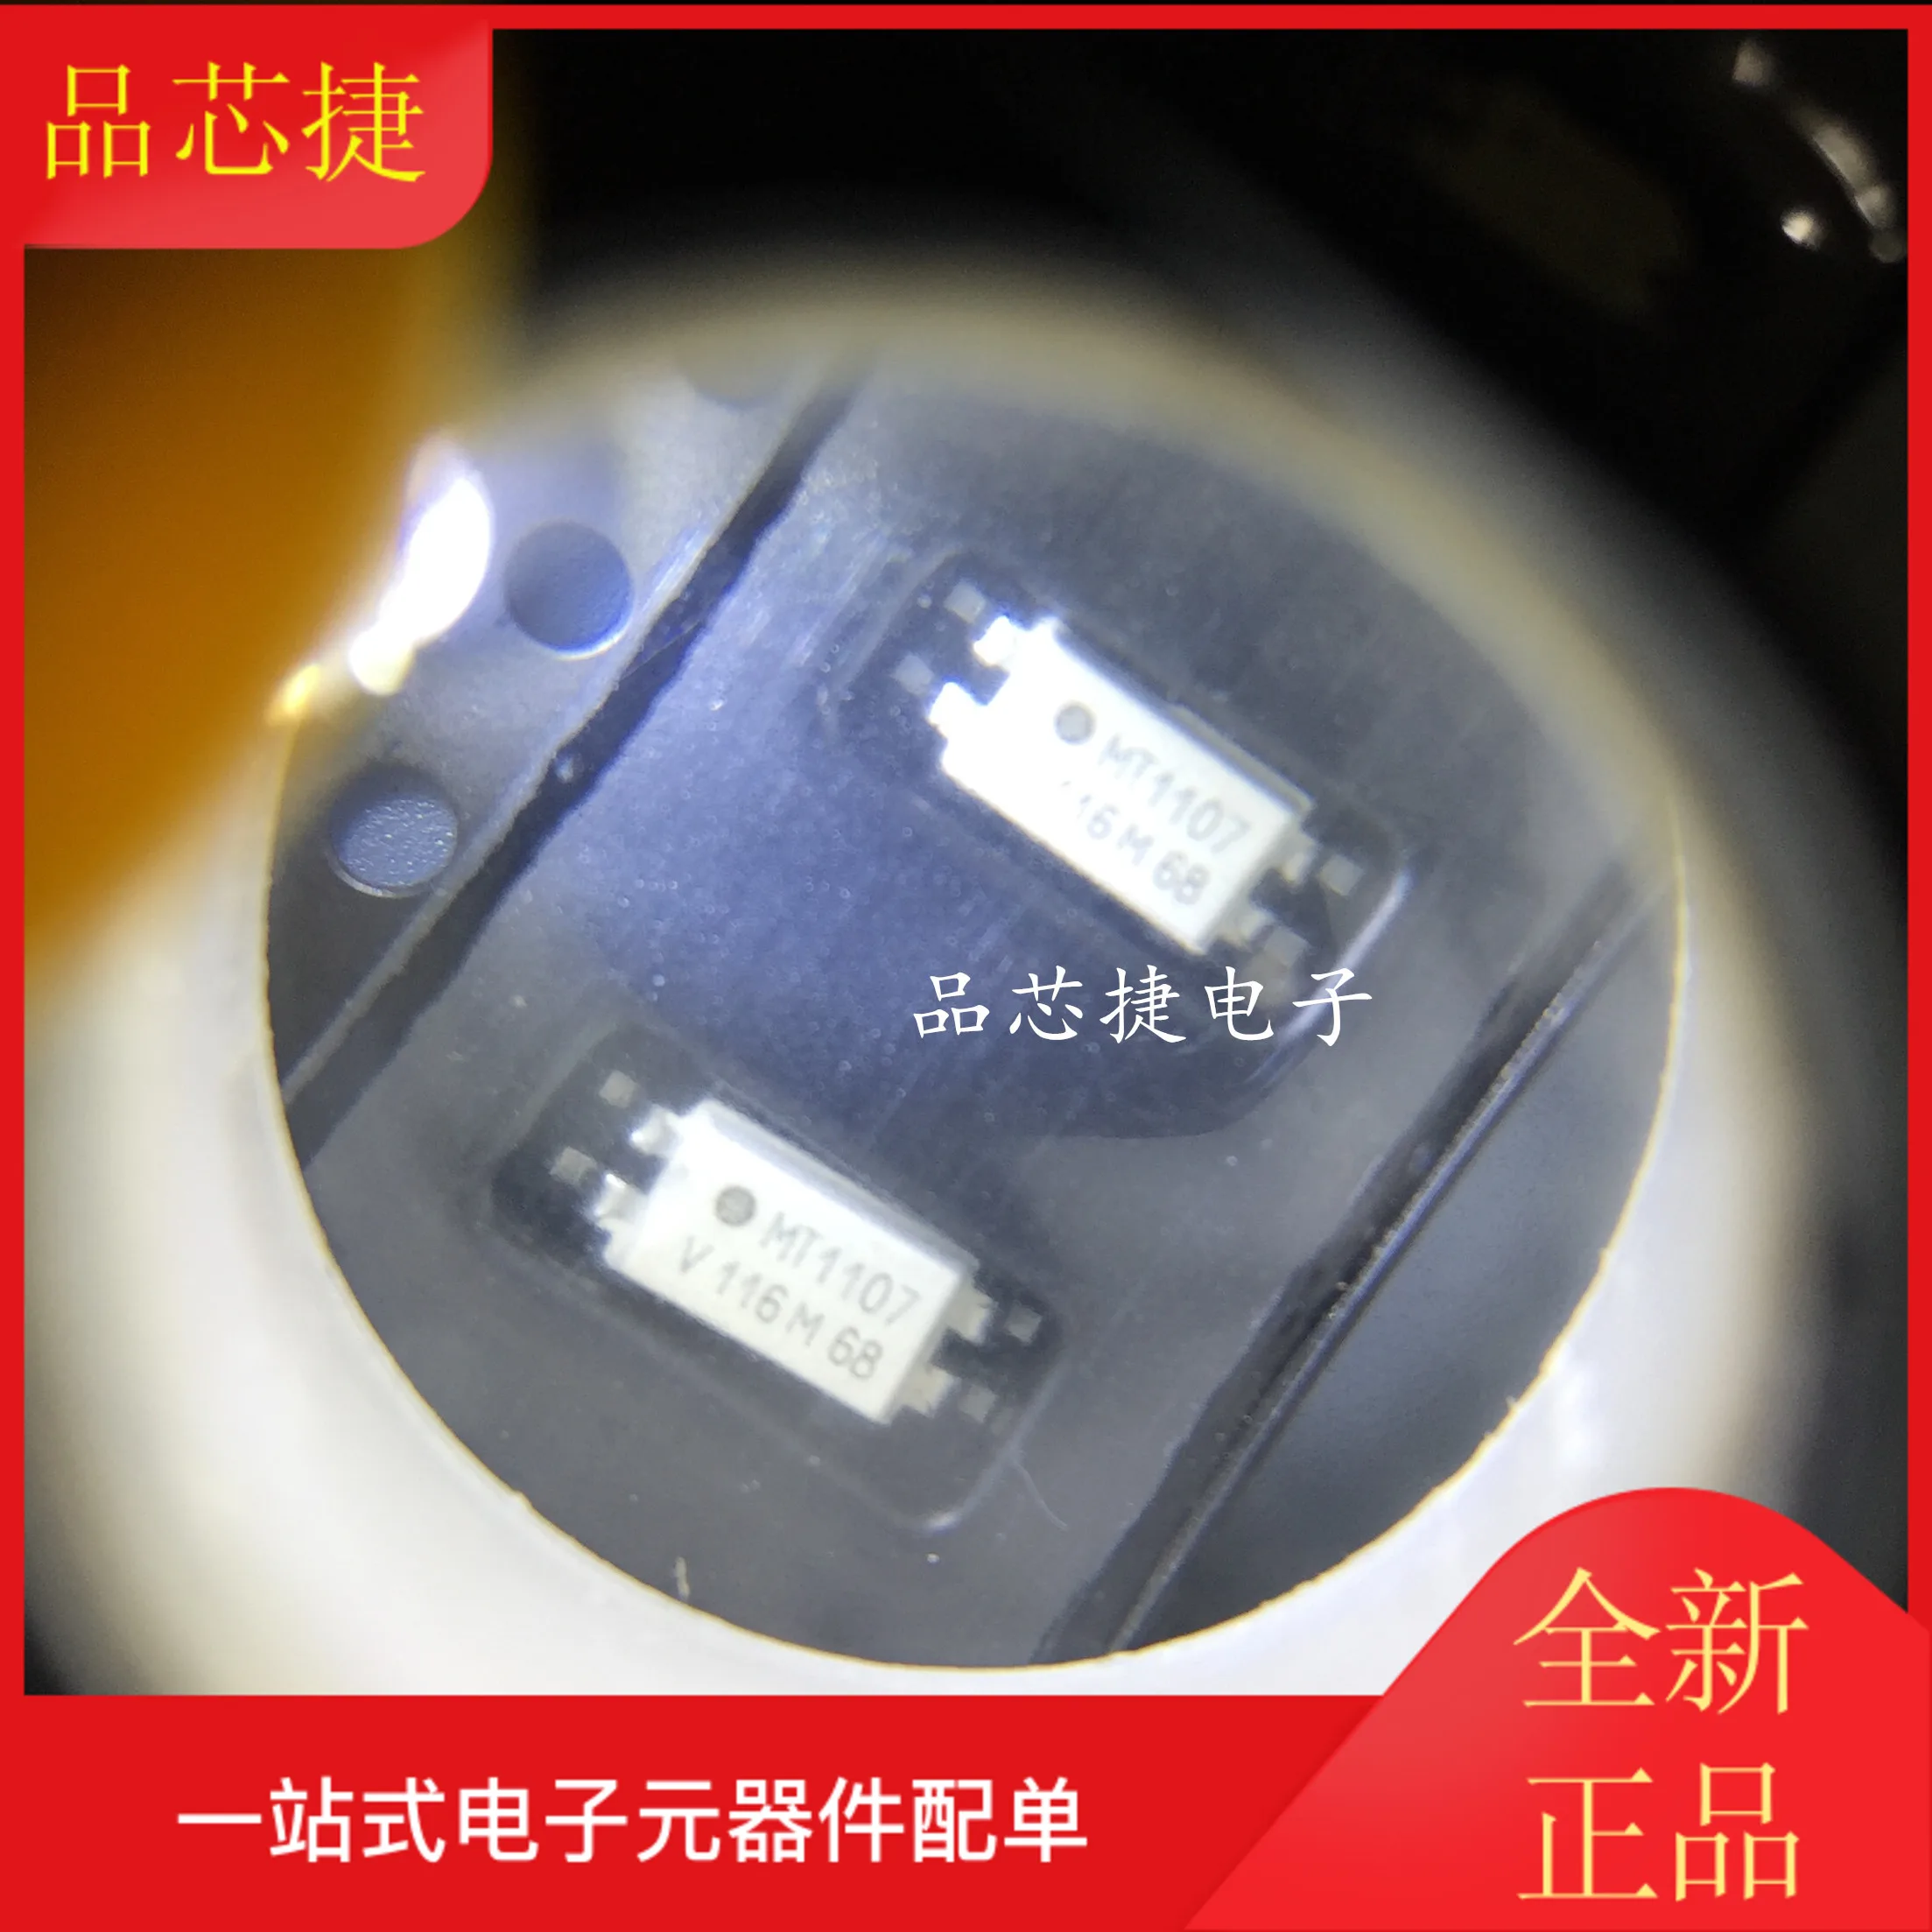 

10 шт. Оригинальный Новый TCMT1107 Silkscreen MT1107 SOP4 оптический изолятор транзисторный чип